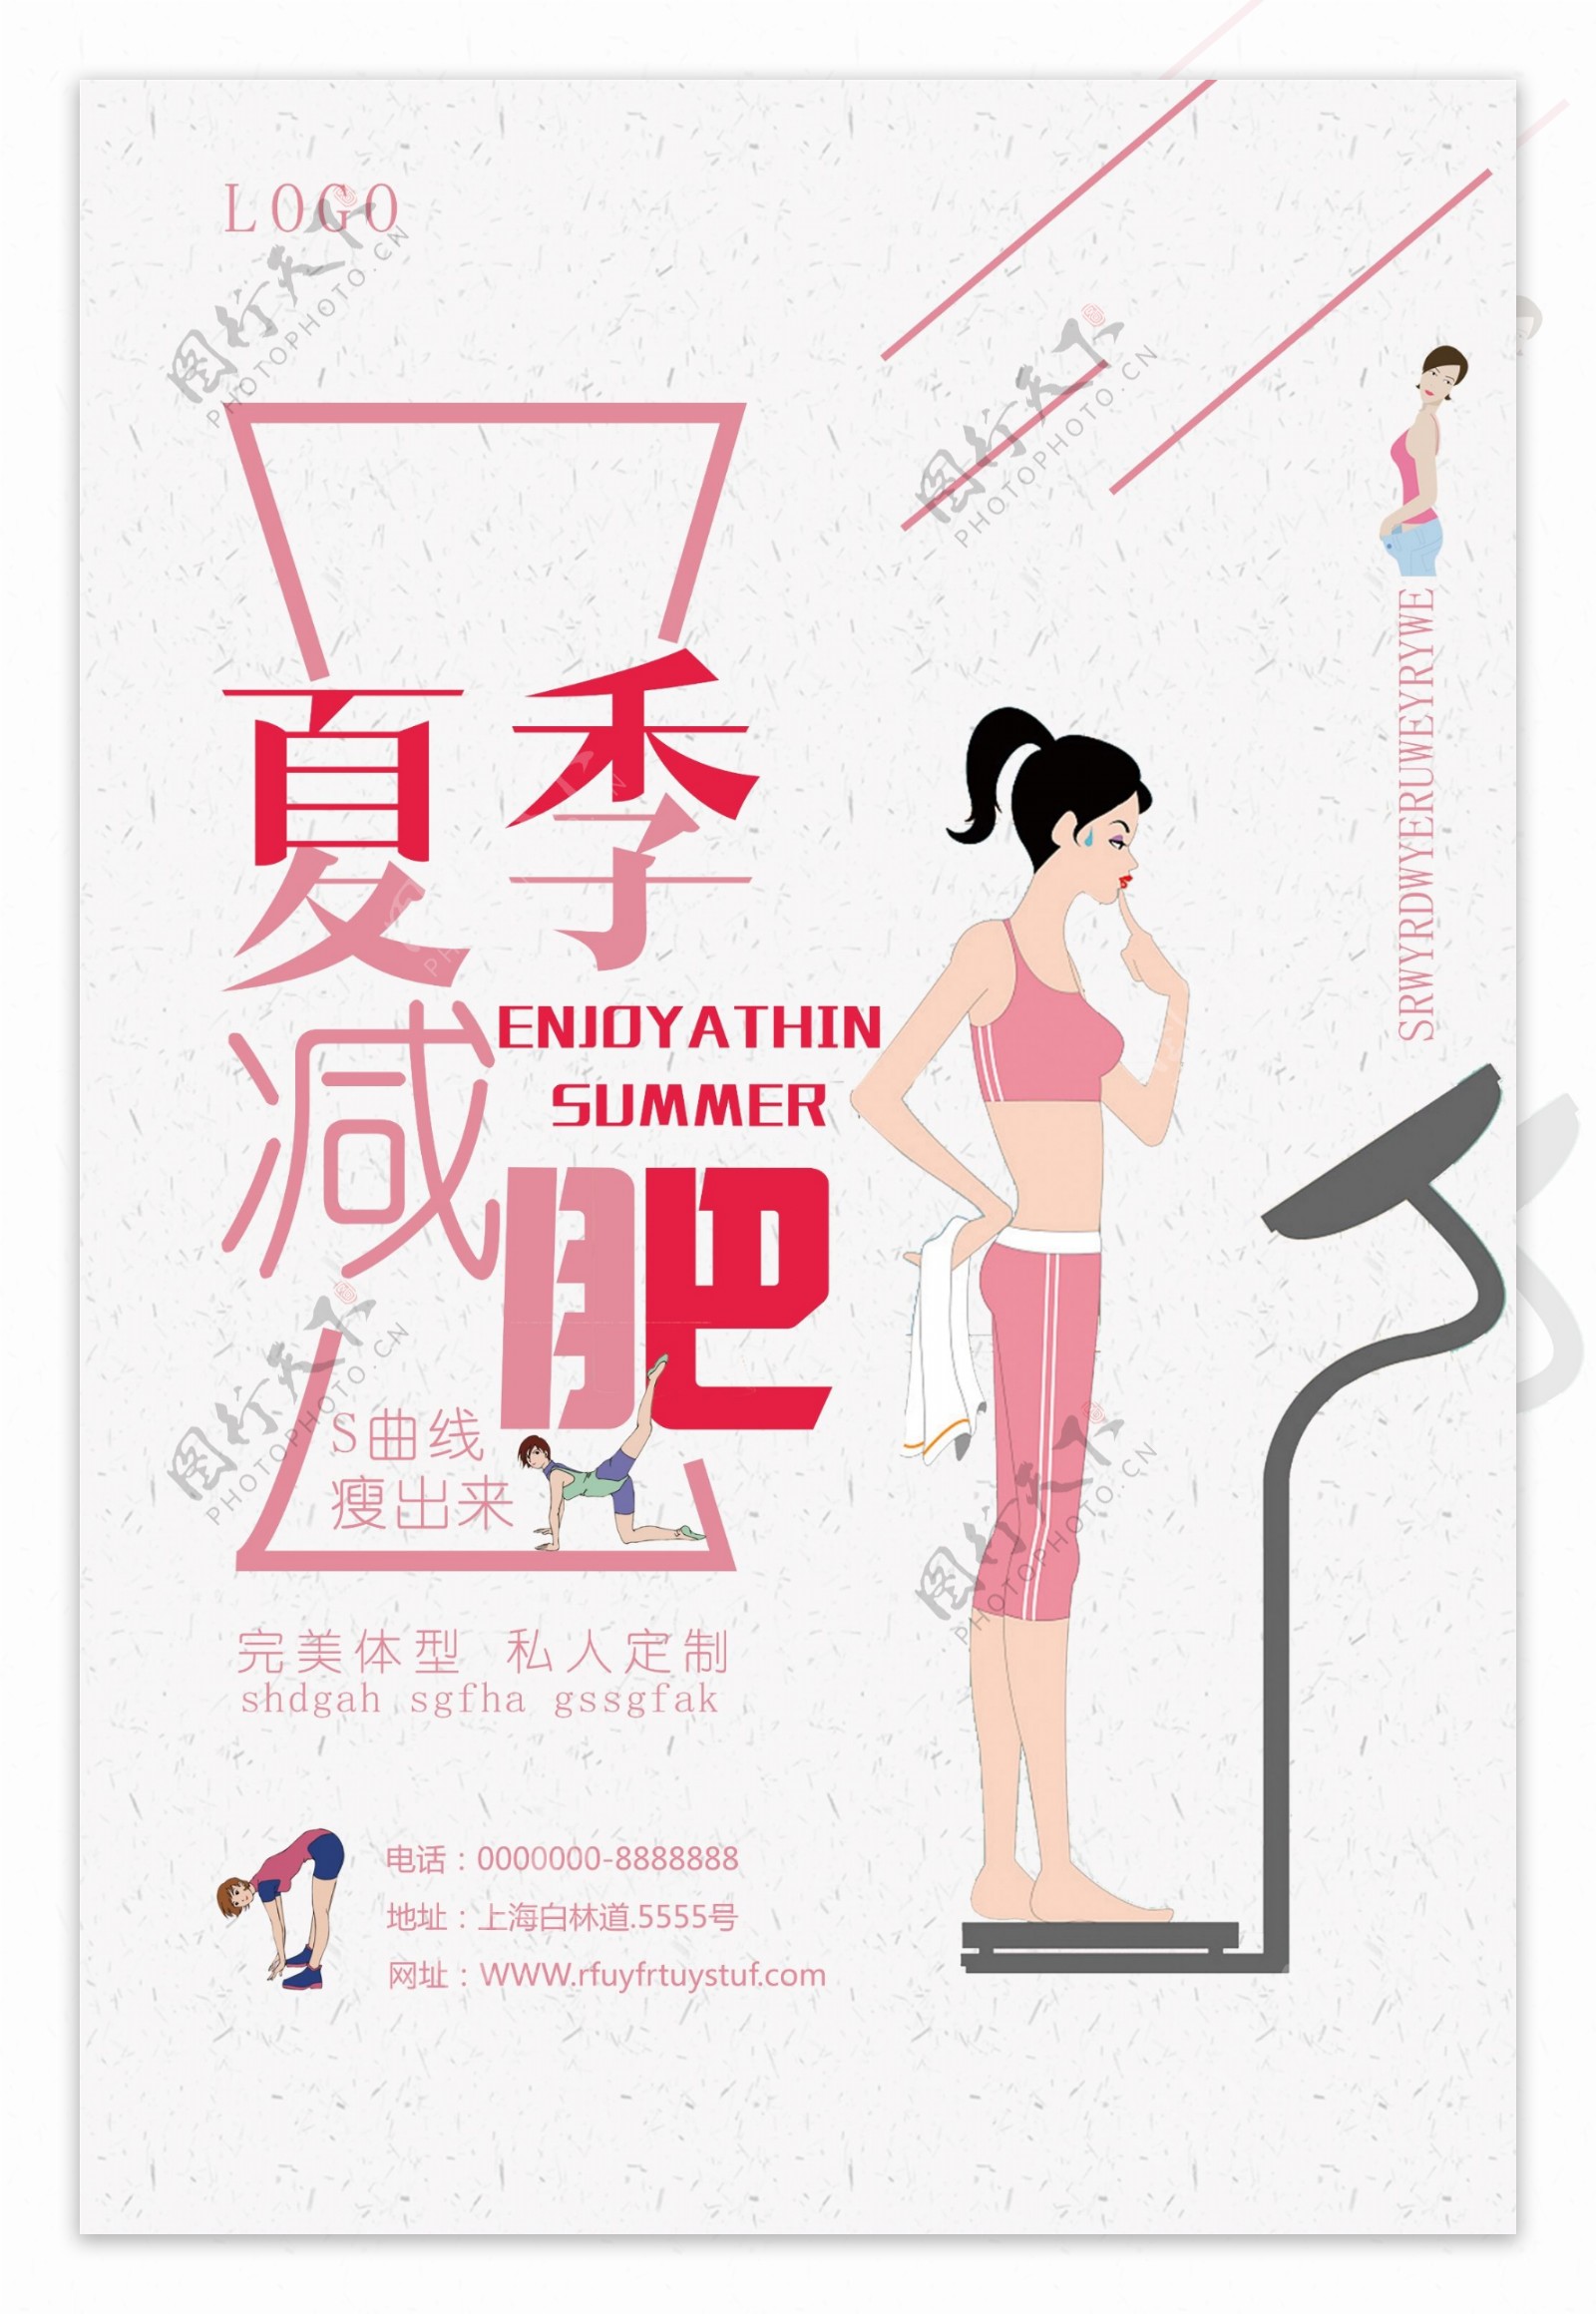 夏日减肥健身运动宣传海报